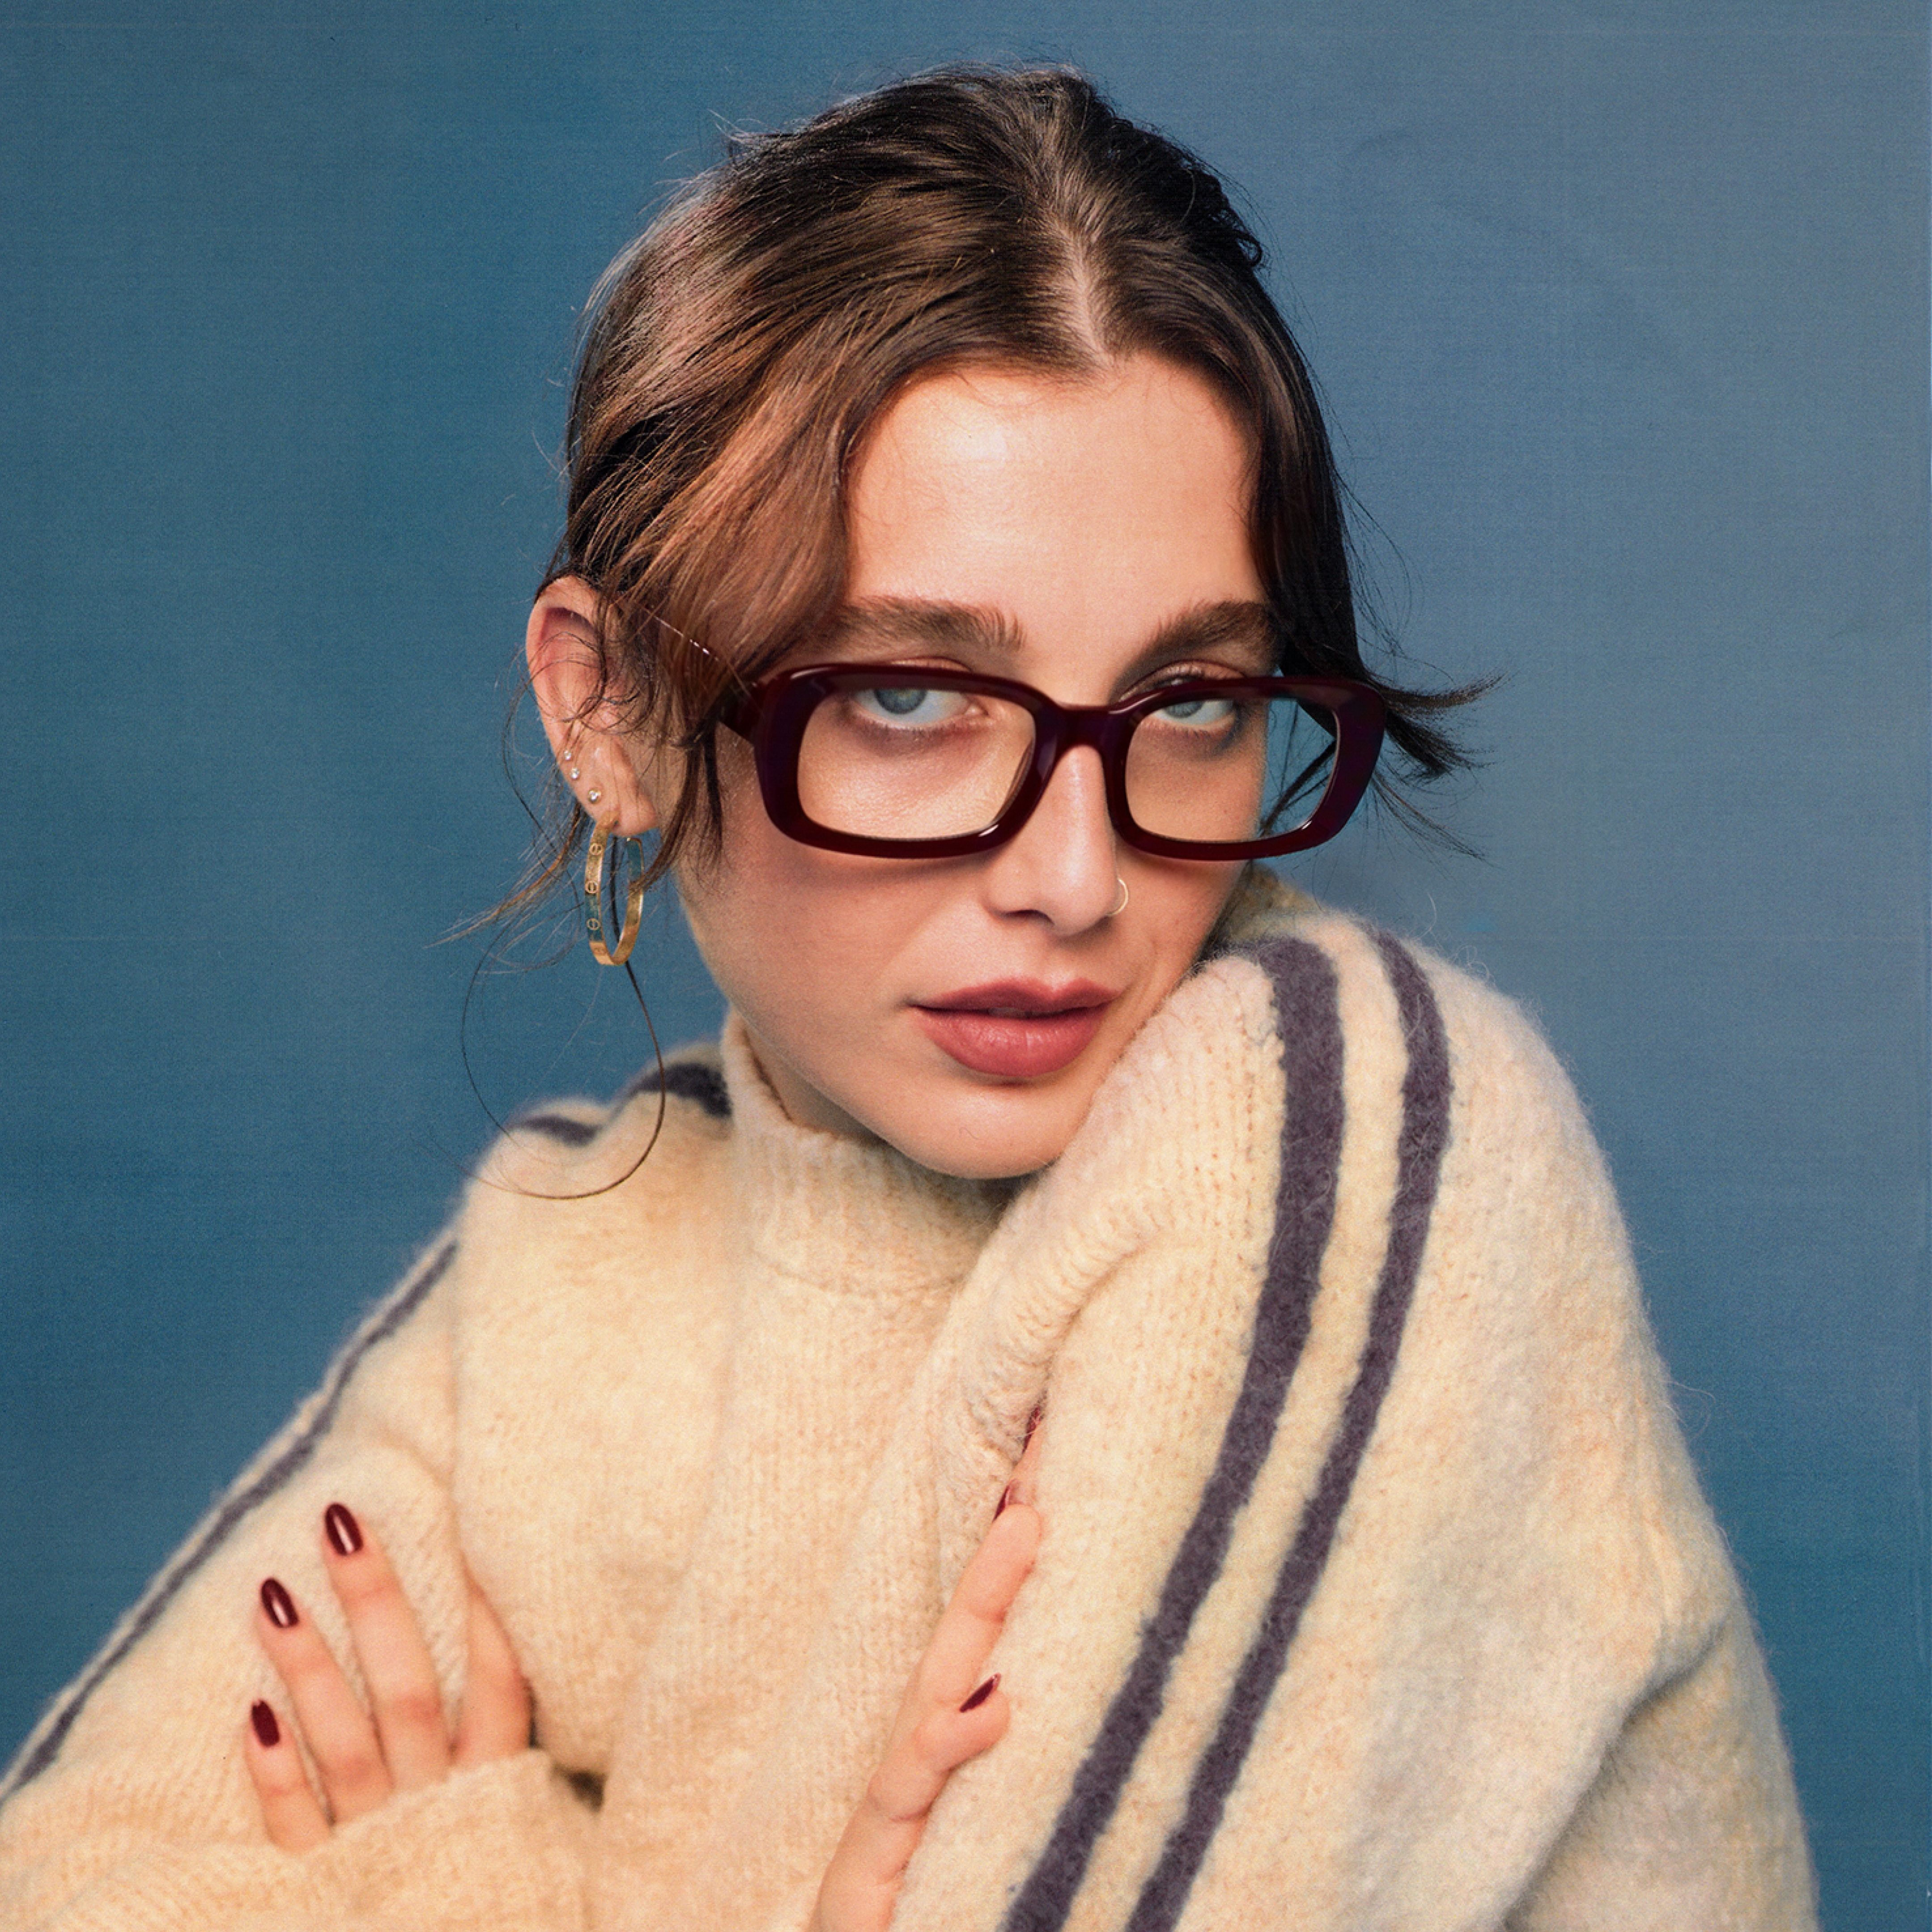 Woman posing in glasses